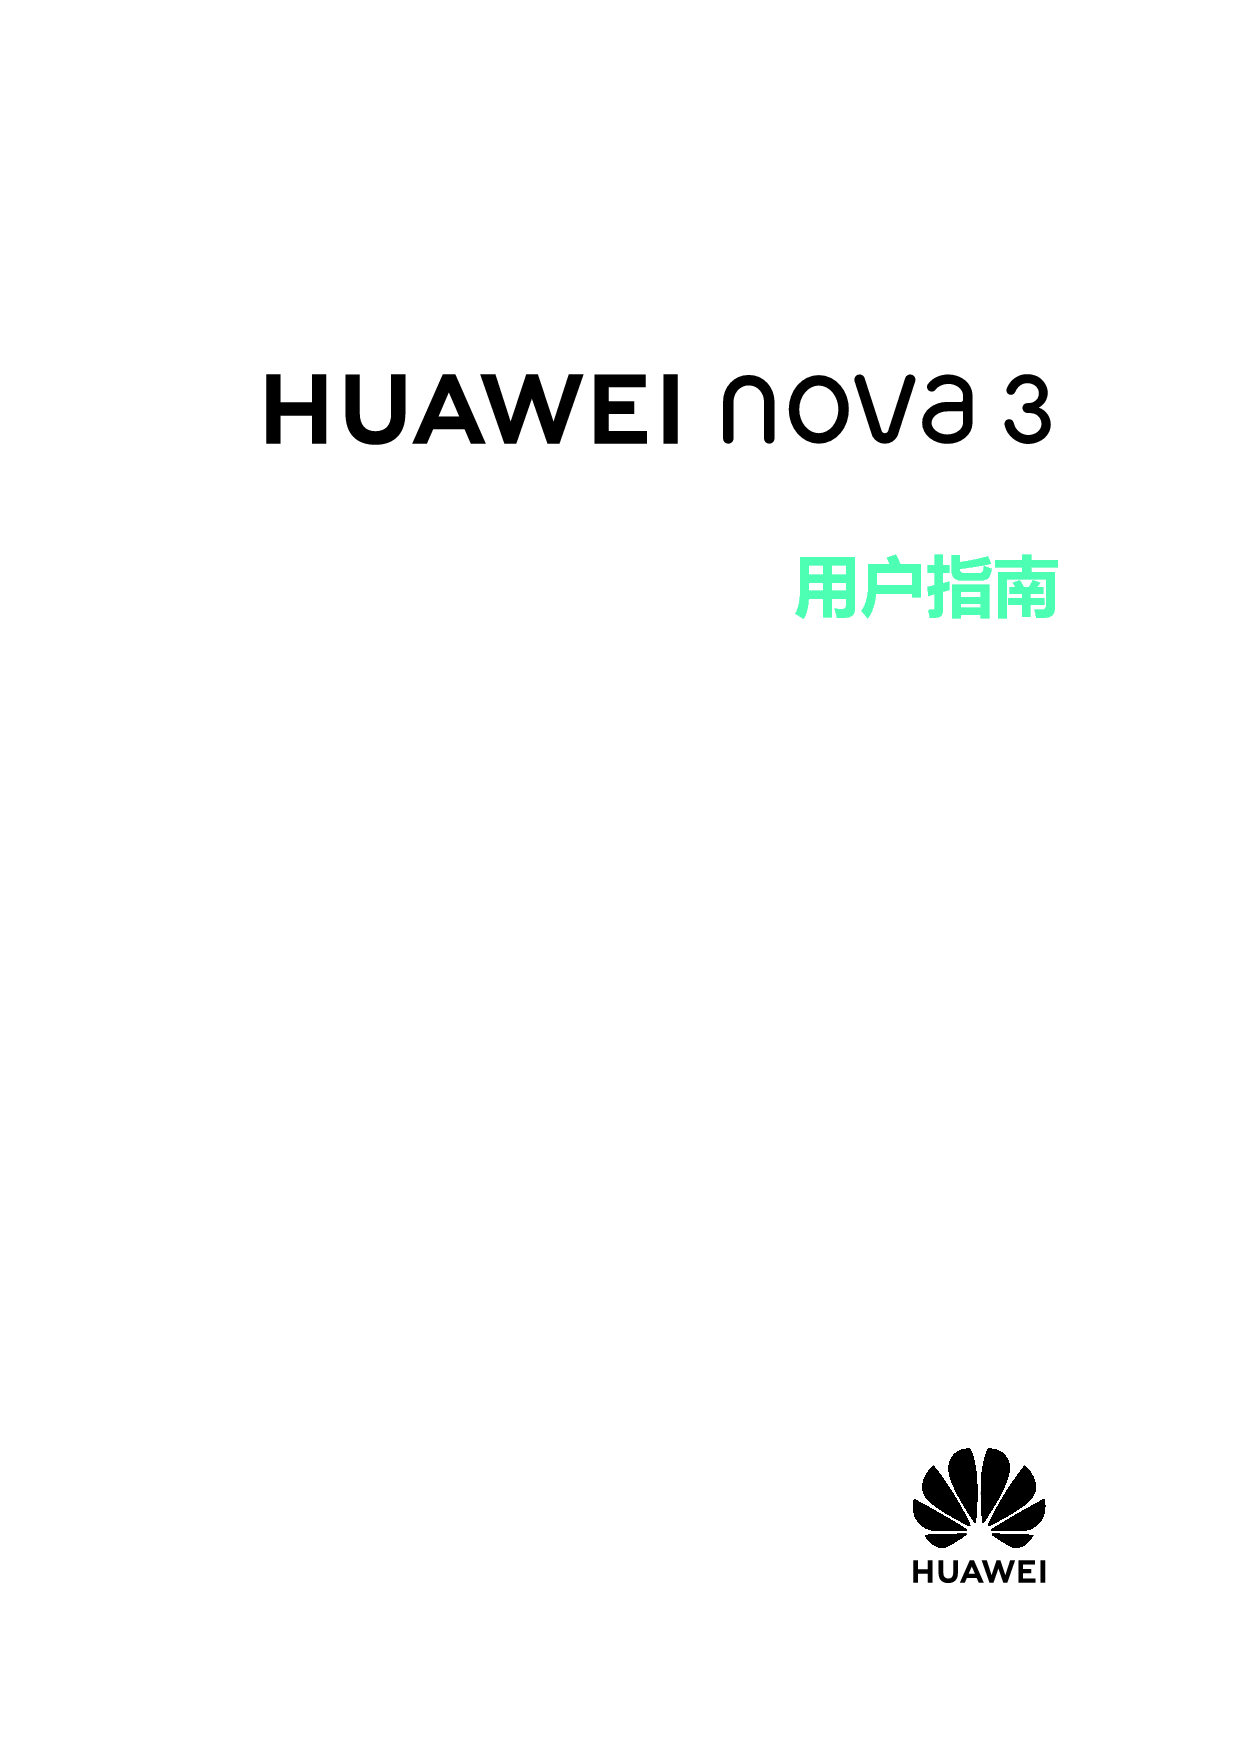 华为 Huawei NOVA 3 EMUI8.2 用户指南 封面